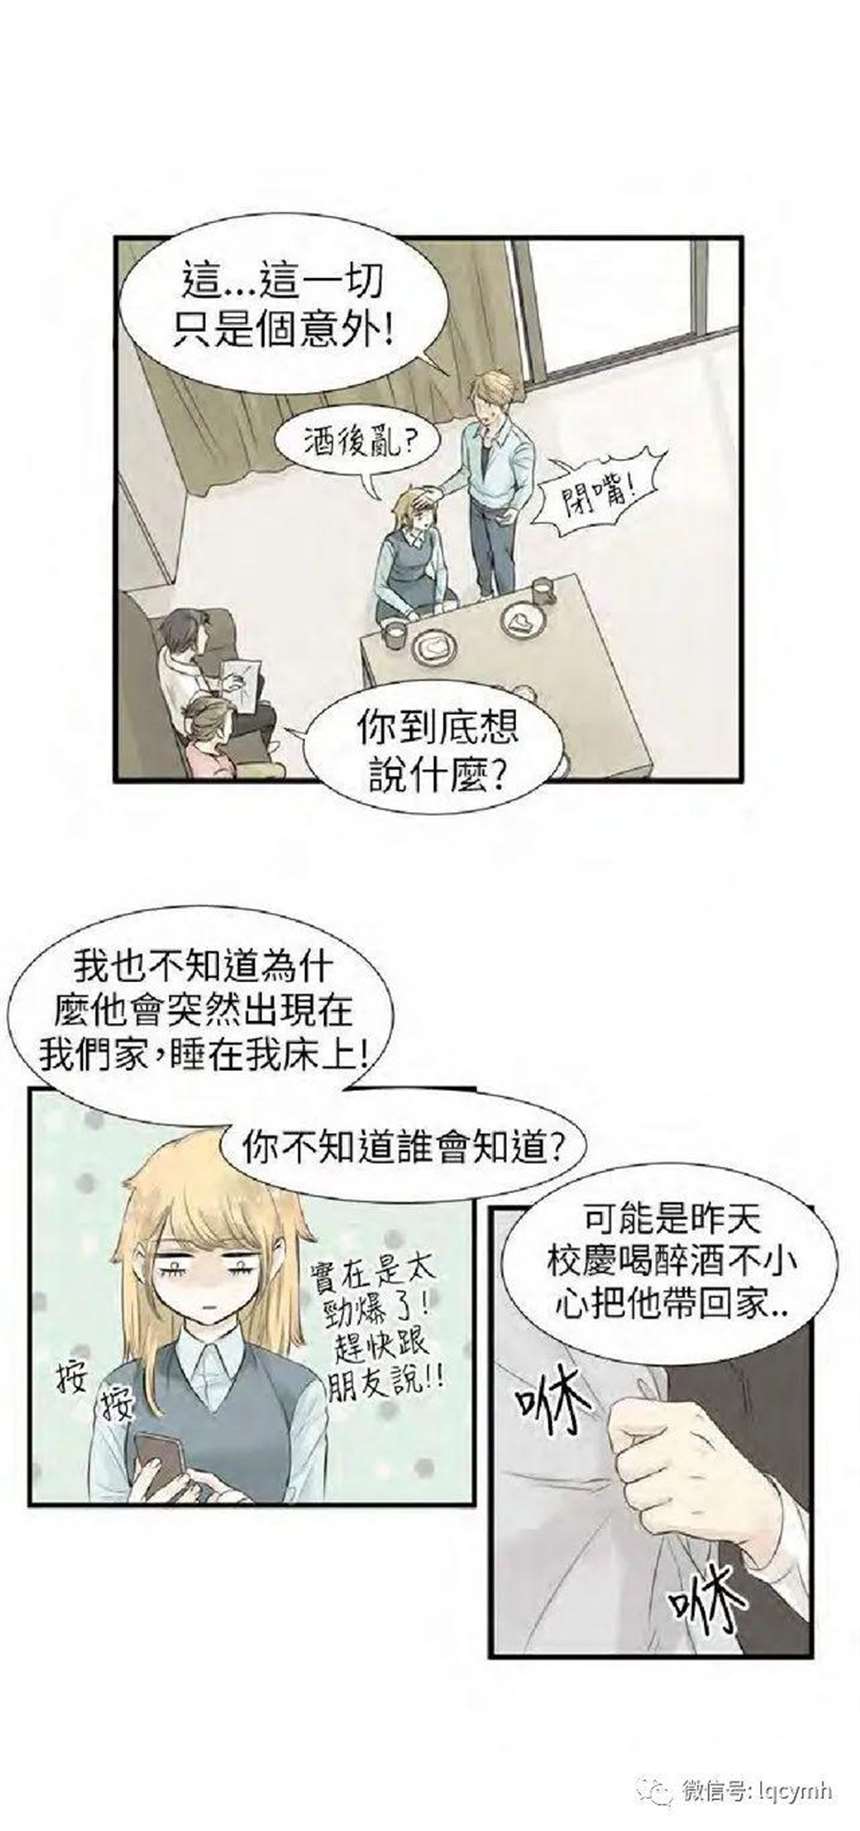 韩国bl漫《普通关系》(肉),完结,不喜误入! 韩国同性H漫画